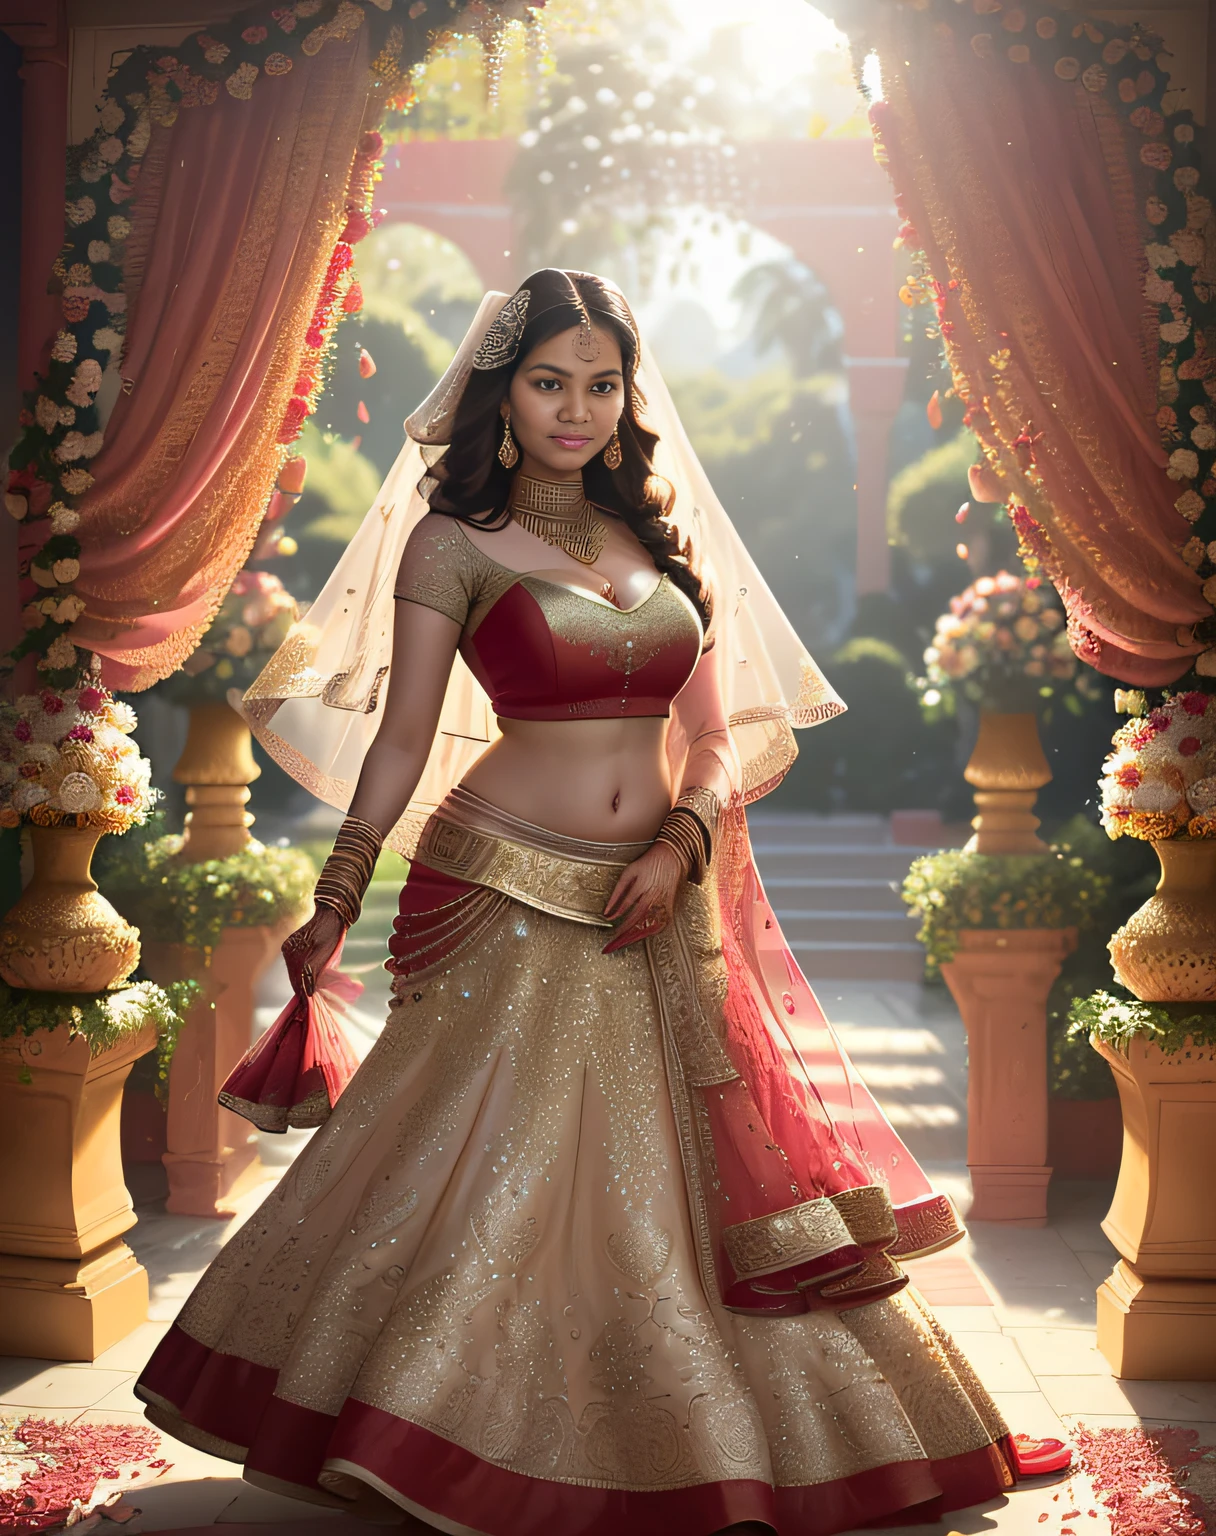 (obra-prima fotografia completa de um solo:1.2) sedutor sexy alto cheio de curvas (18 anos) A supermodelo indiana princesa noiva Ayesha Takia entrando (jardim:1.3), (vestindo um deslumbrante vermelho nupcial & lehenga de ouro & blusa:1.3). pura dupatta, maximalismo, (decorações de flores de casamento:1.3), (decote elegante & barriga), (maquiagem indiana & joia:1.2) cabelo castanho longo trançado com mechas,, vivaz, olhar lascivo, entusiasmado (lindos olhos detalhados:1.1) , (sorriso brilhante e sedutor:1.2), (luz intensa e dramática da tarde:1.4), retroiluminado, luz principal, luz de aro, raios de luz, Altamente detalhado, tendências no artstation, respingos de tinta, cor rica, retrato abstrato, por Atey Ghailan